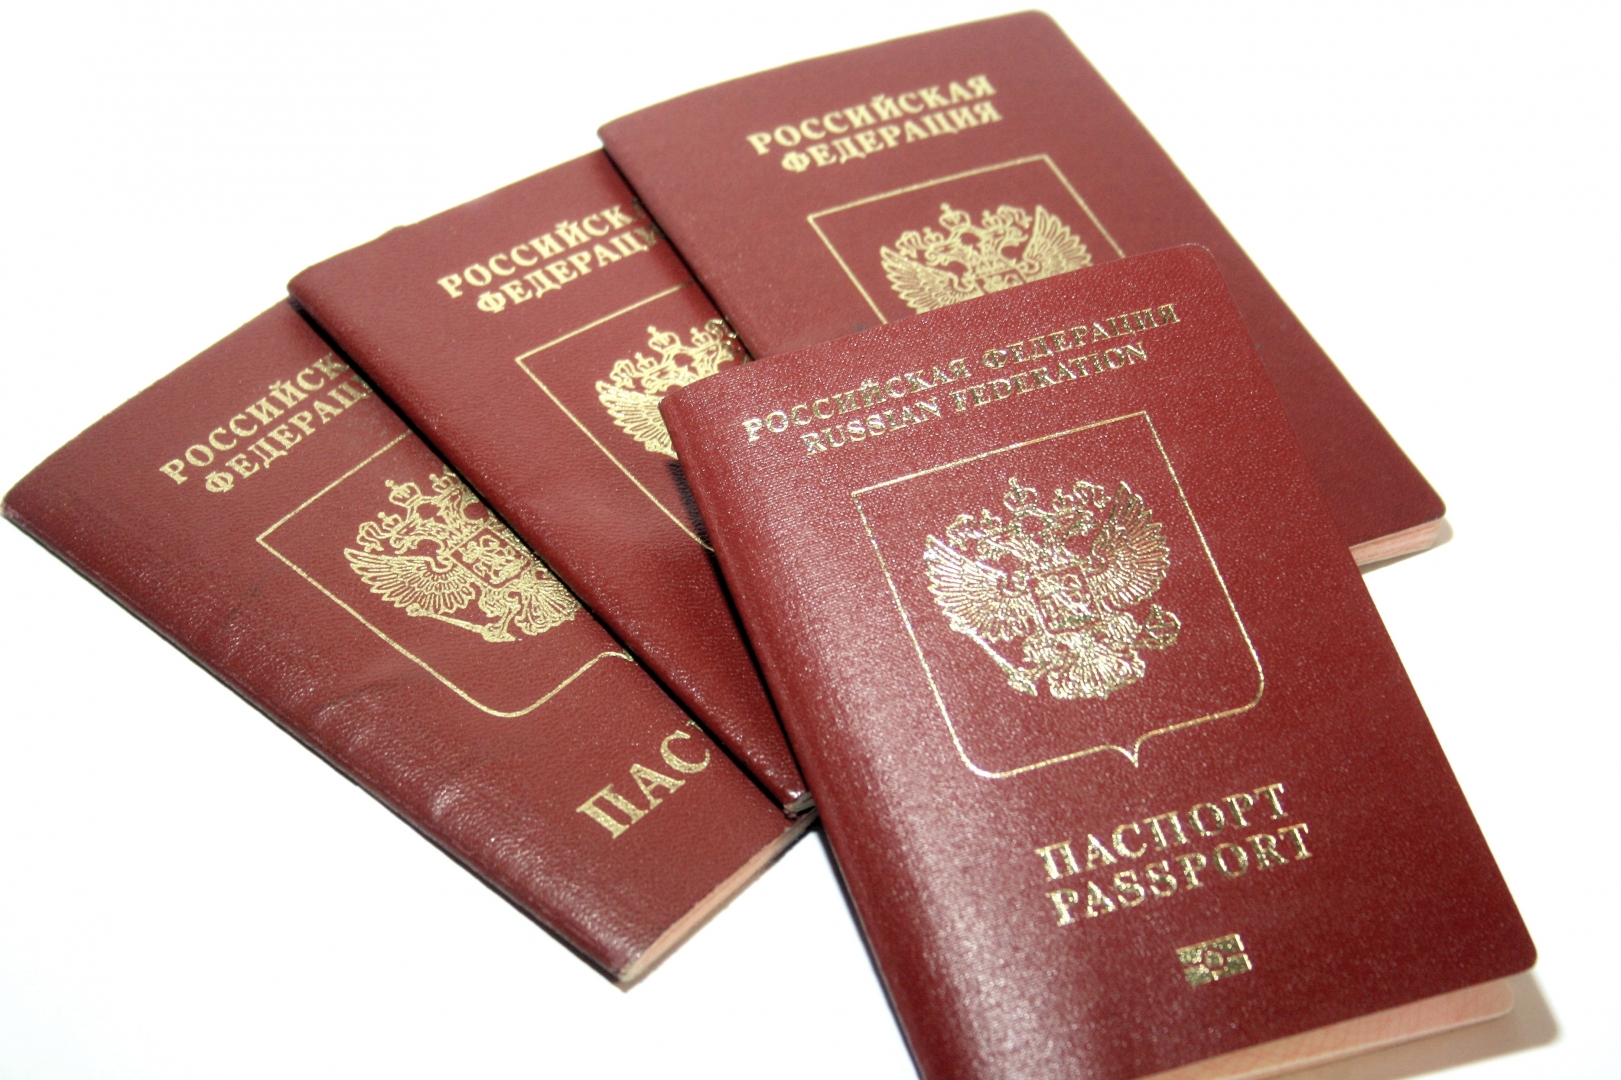 Заграничный паспорт гражданина РФ